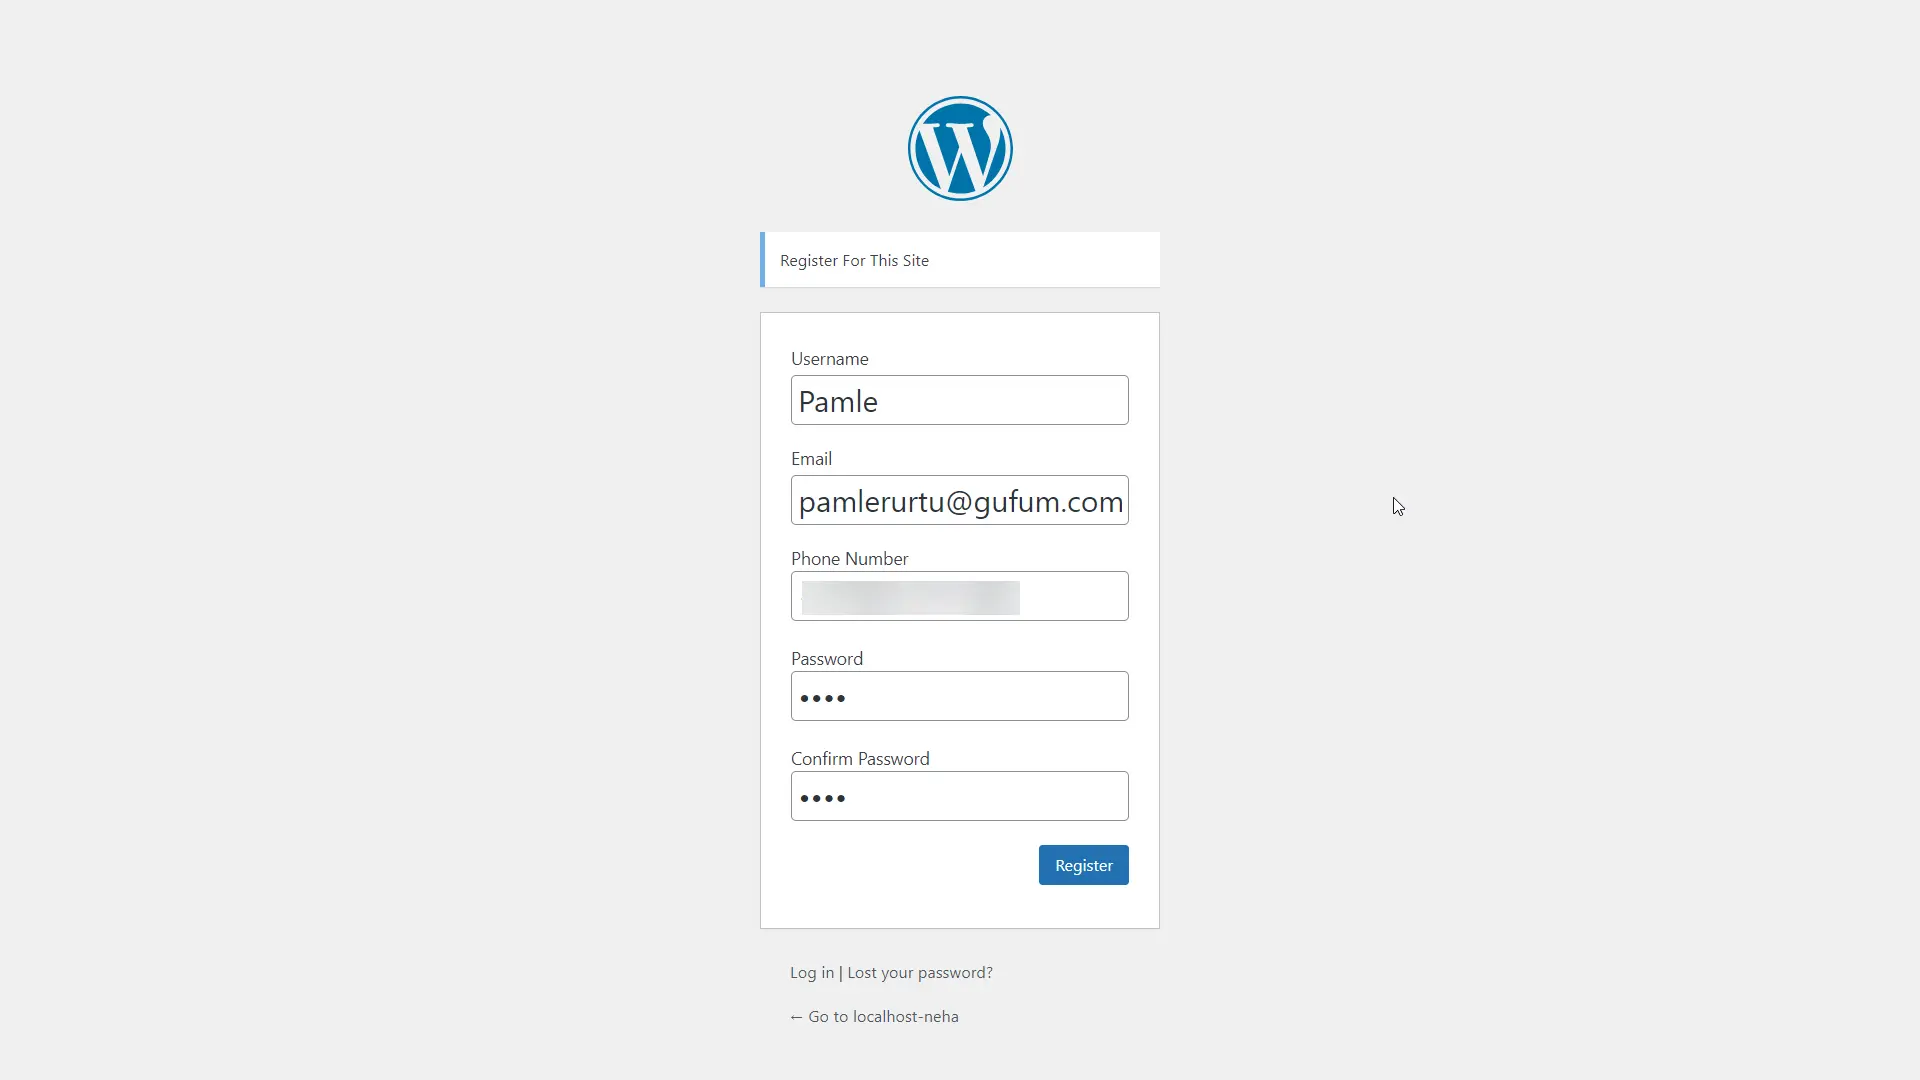 wordPress default registration form - let the user choose